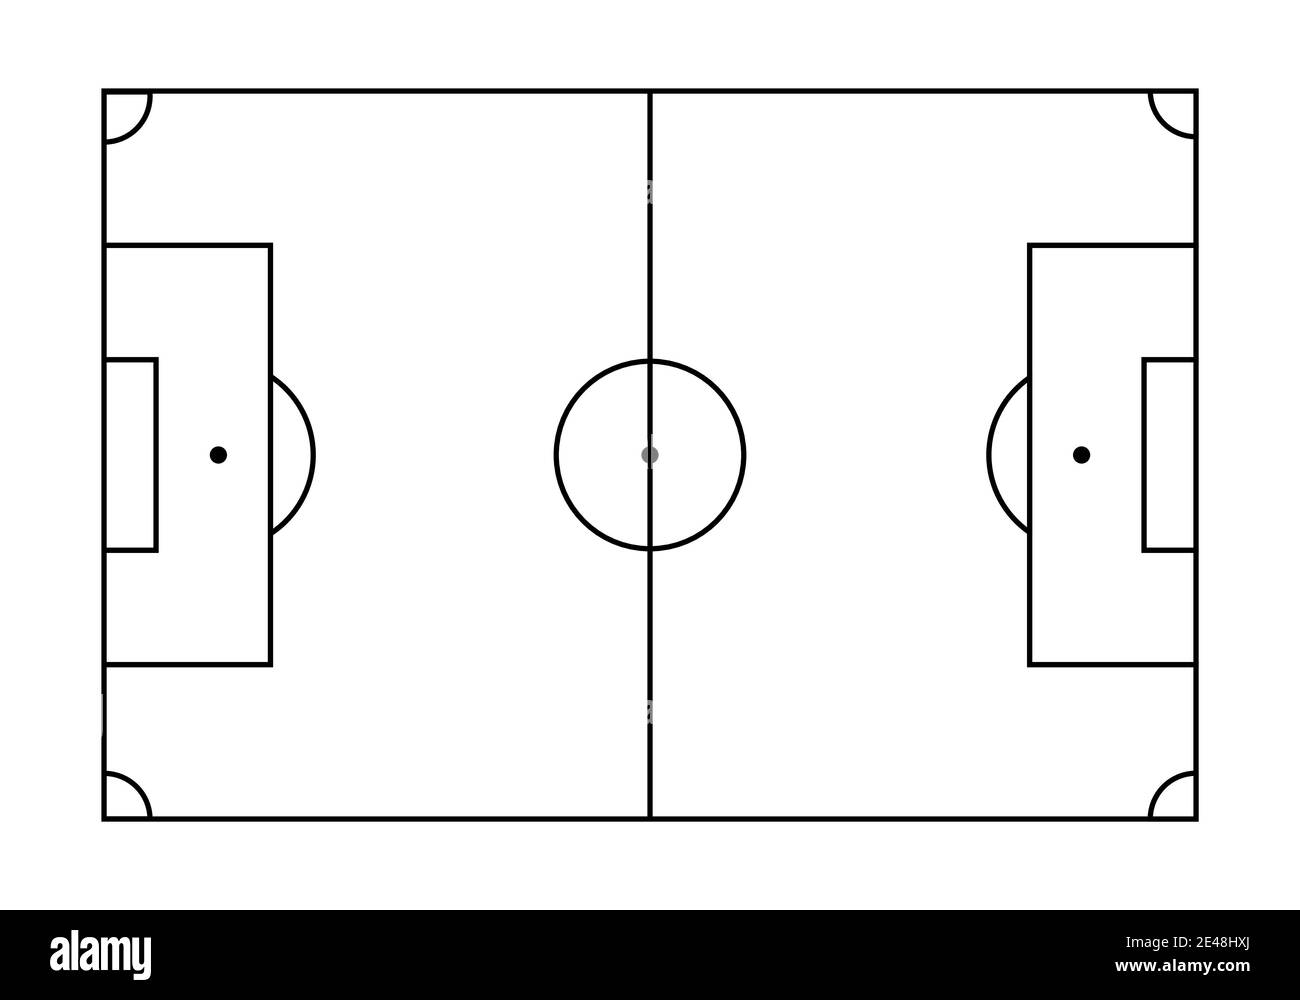 Táctica de fútbol en una pizarra blanca Imagen Vector de stock - Alamy